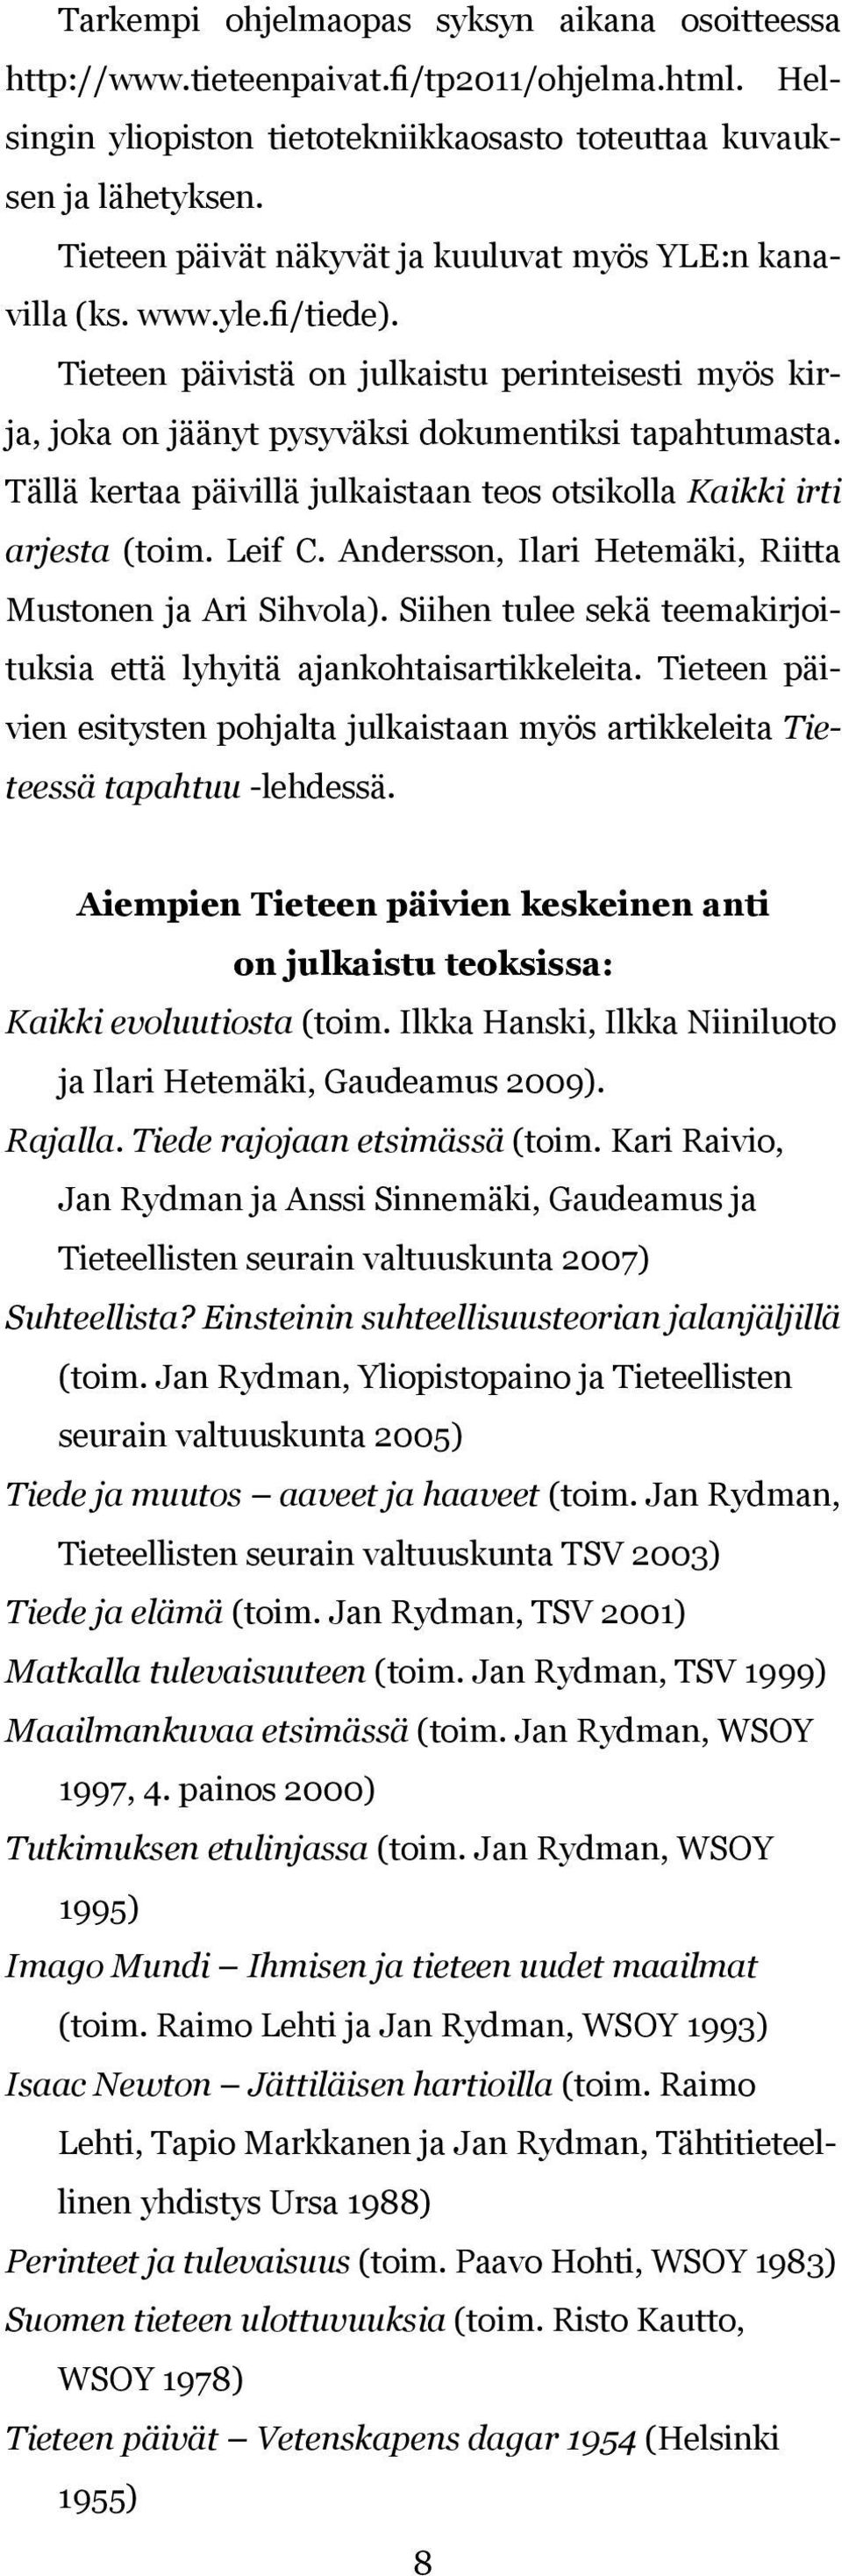 Tällä kertaa päivillä julkaistaan teos otsikolla Kaikki irti arjesta (toim. Leif C. Andersson, Ilari Hetemäki, Riitta Mustonen ja Ari Sihvola).